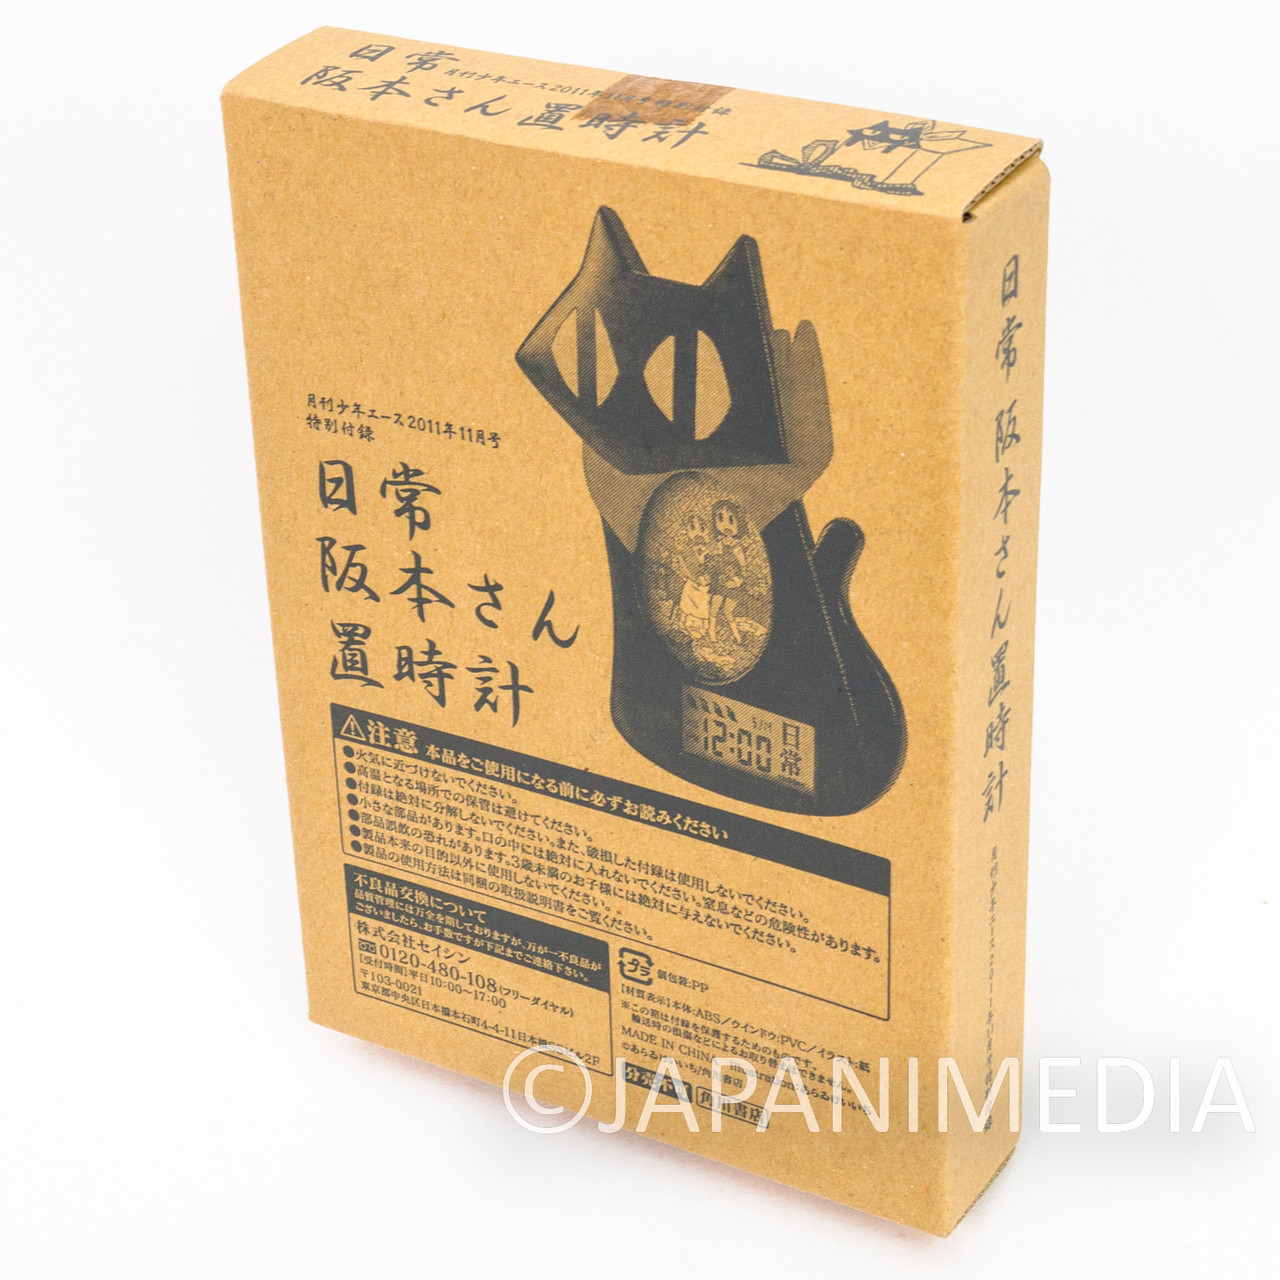 Nichijou Mio Naganohara & Sakamoto Black Cat Figure Strap JAPAN ANIME MANGA